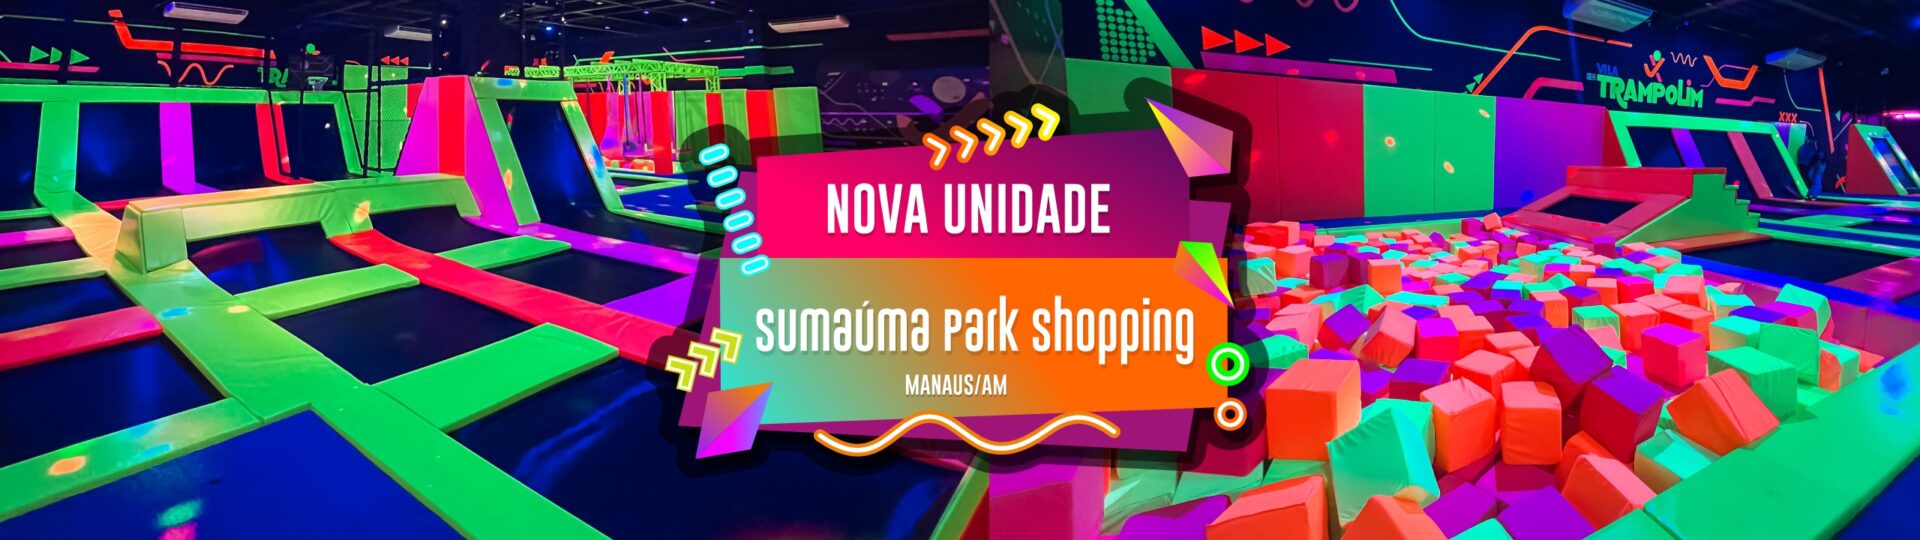 banner Sumauma Park Shopping 01